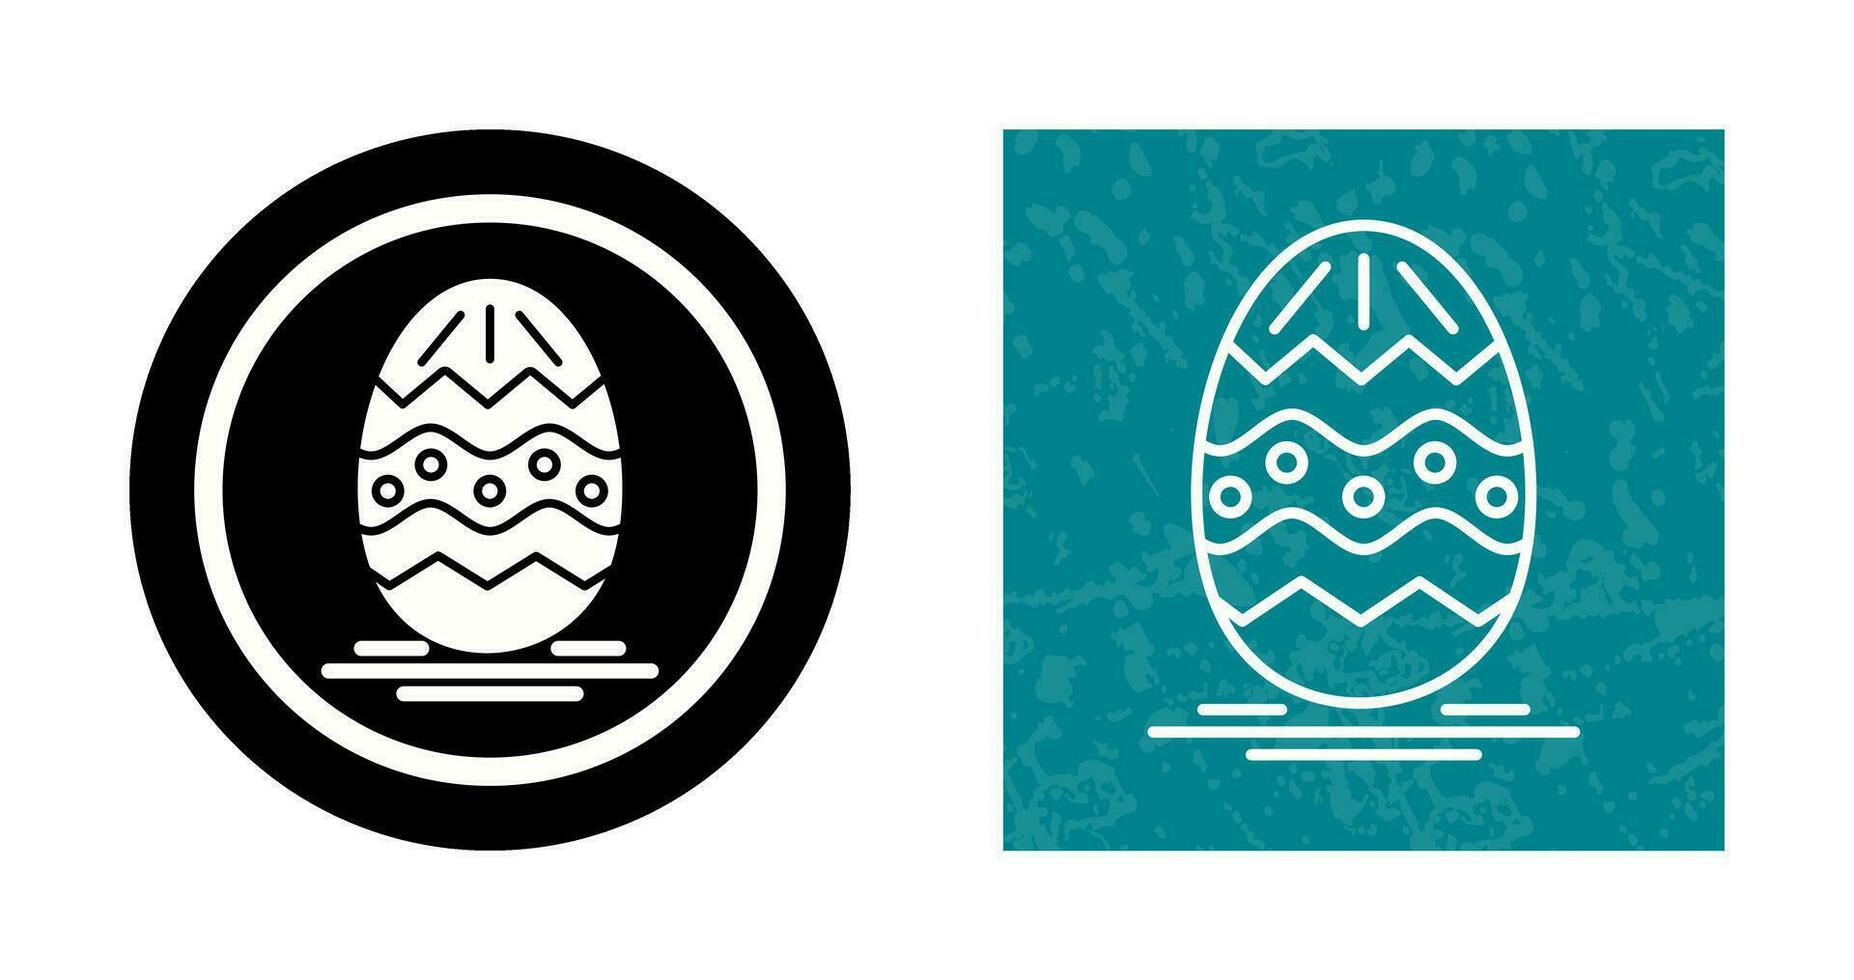 påsk ägg vektor ikon